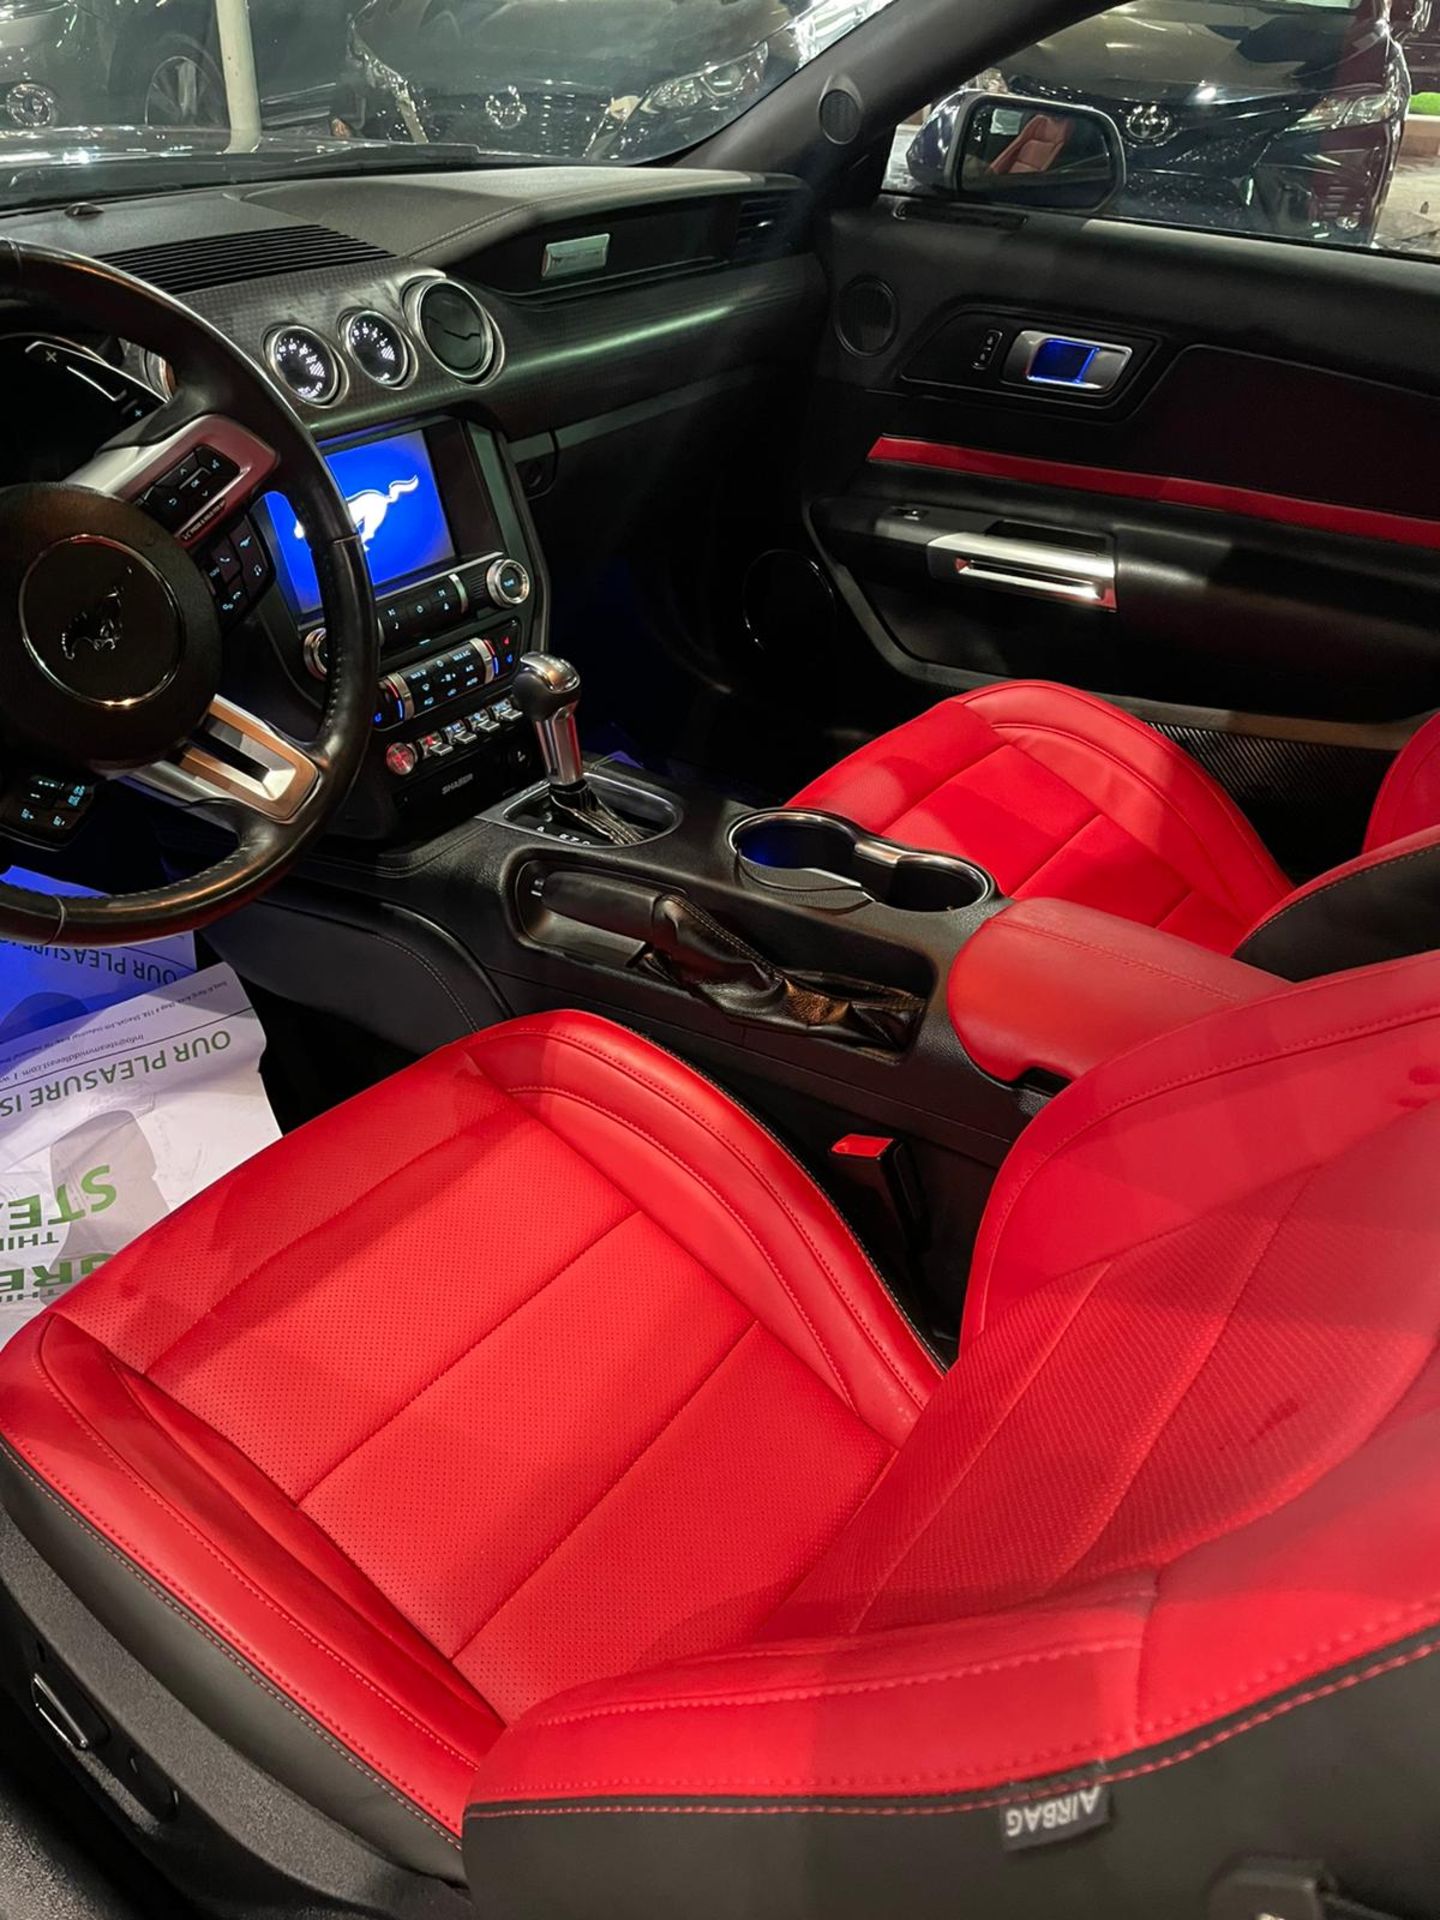 2019 mustang gt 5.0 V8 Shelby body kit 15,000 km. Uk mid February. With nova *PLUS VAT* - Image 9 of 9